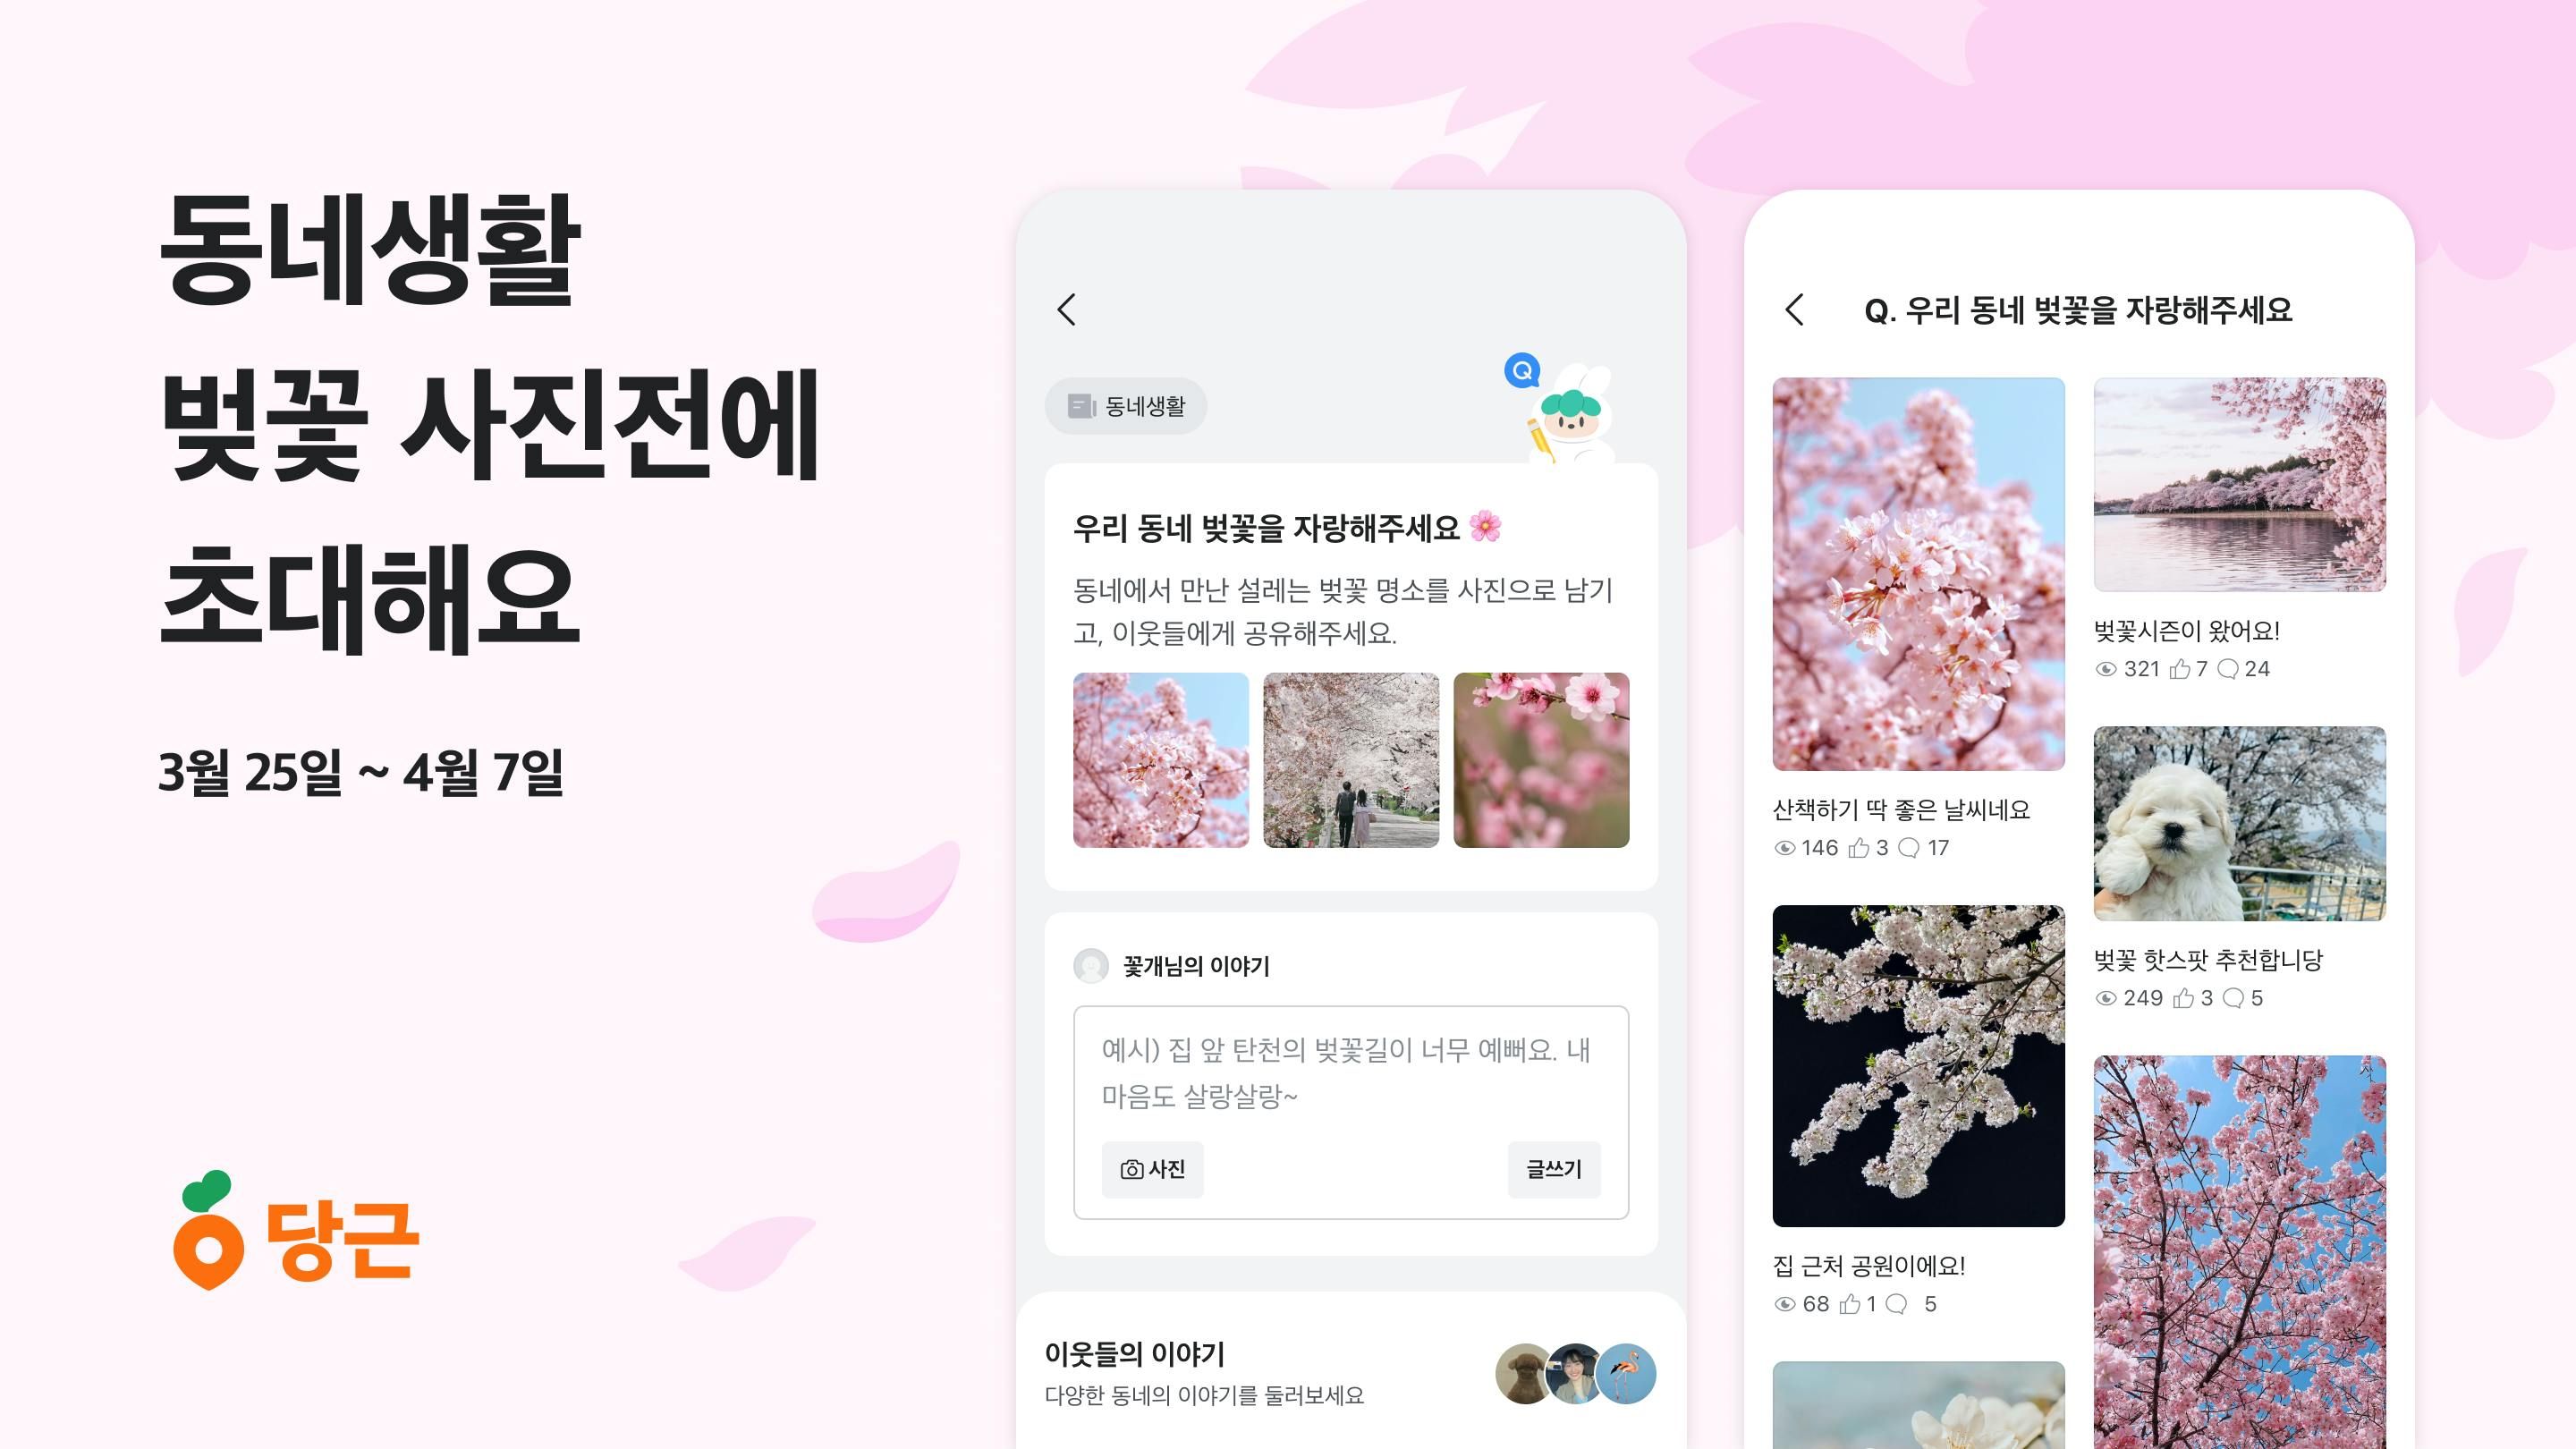 당근, 벚꽃 시즌 맞아 ‘동네 벚꽃 사진전’ 개최_PR썸네일